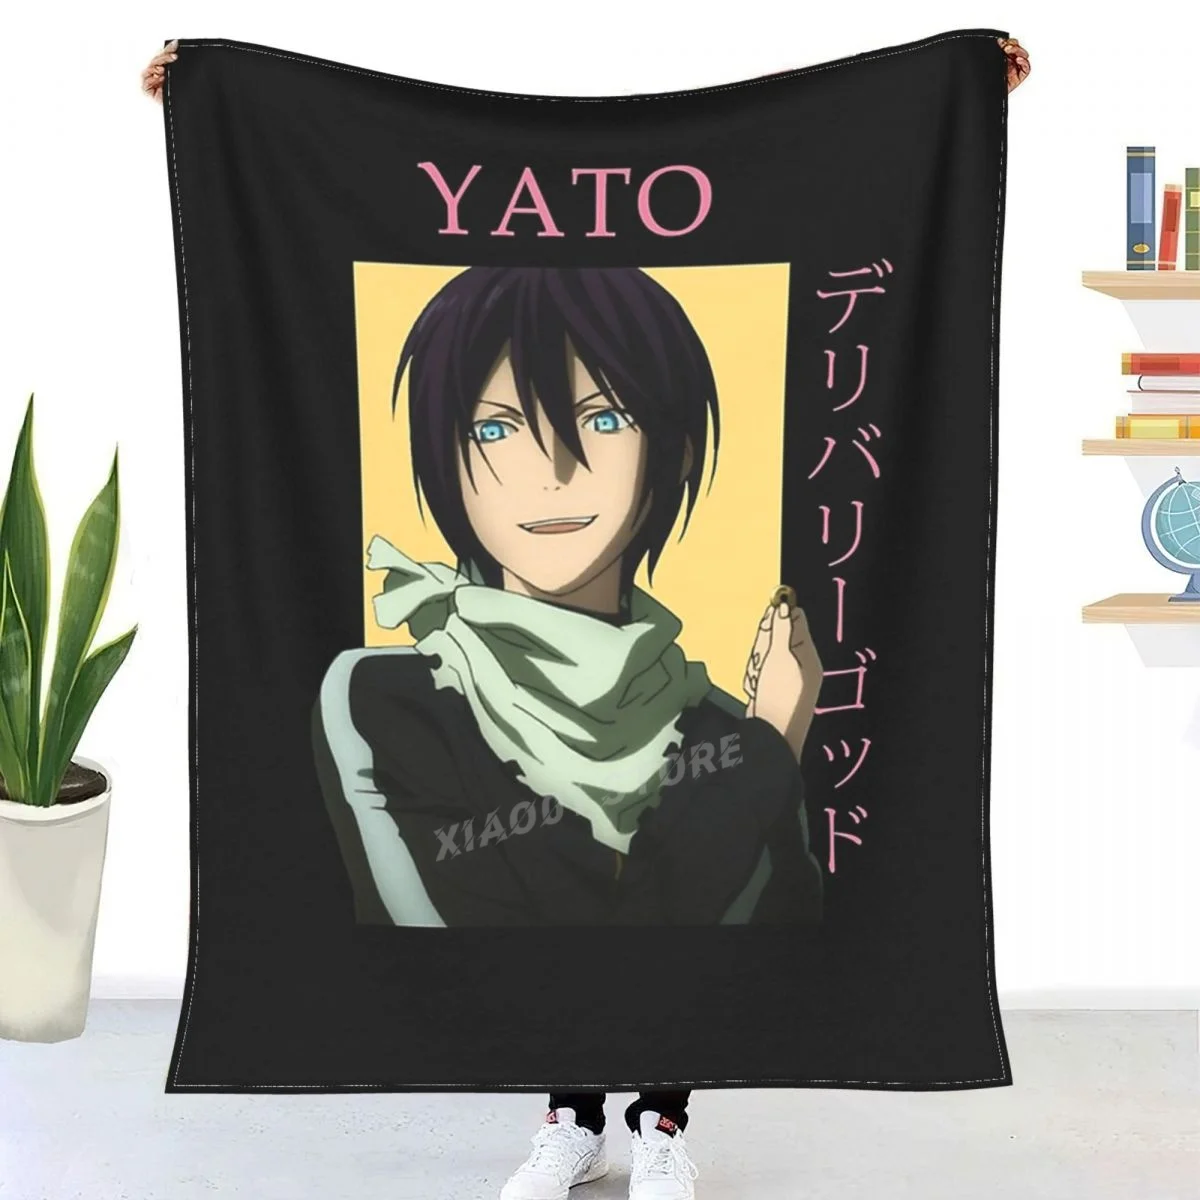 

Yato Noragami Бог удачи аниме плед одеяло Sherpa одеяло постельное белье мягкое одеяло s